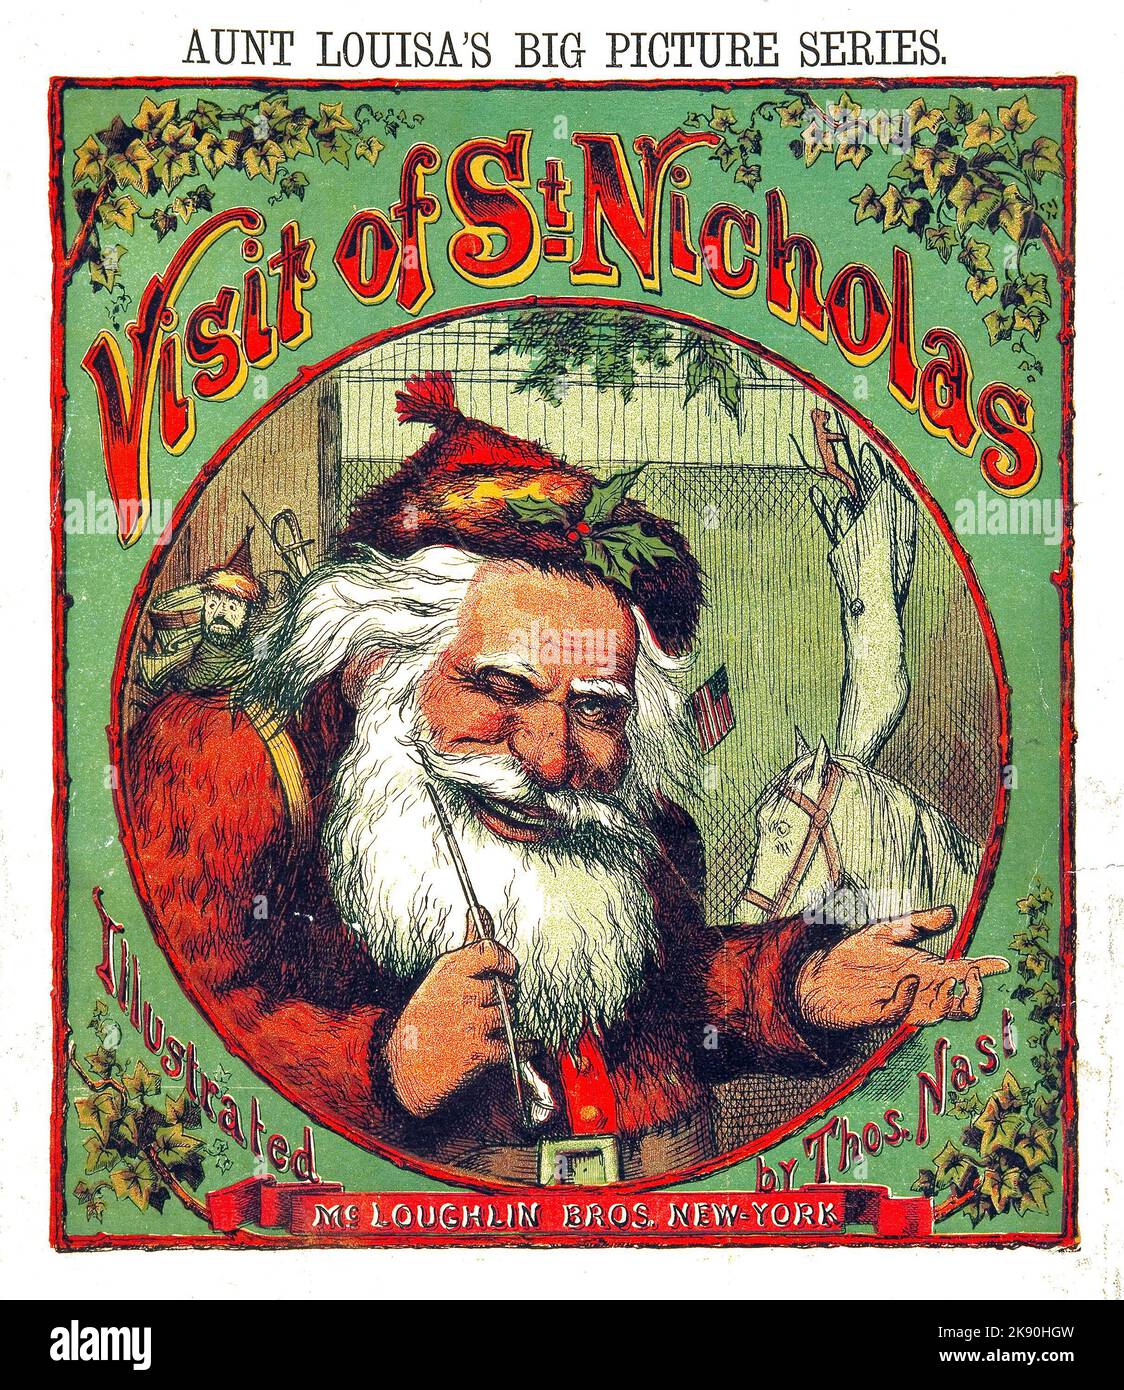 Visite de Saint-Nicolas - Santa Claus - Thomas Nast et Clement Moore illustration - 1869 Banque D'Images